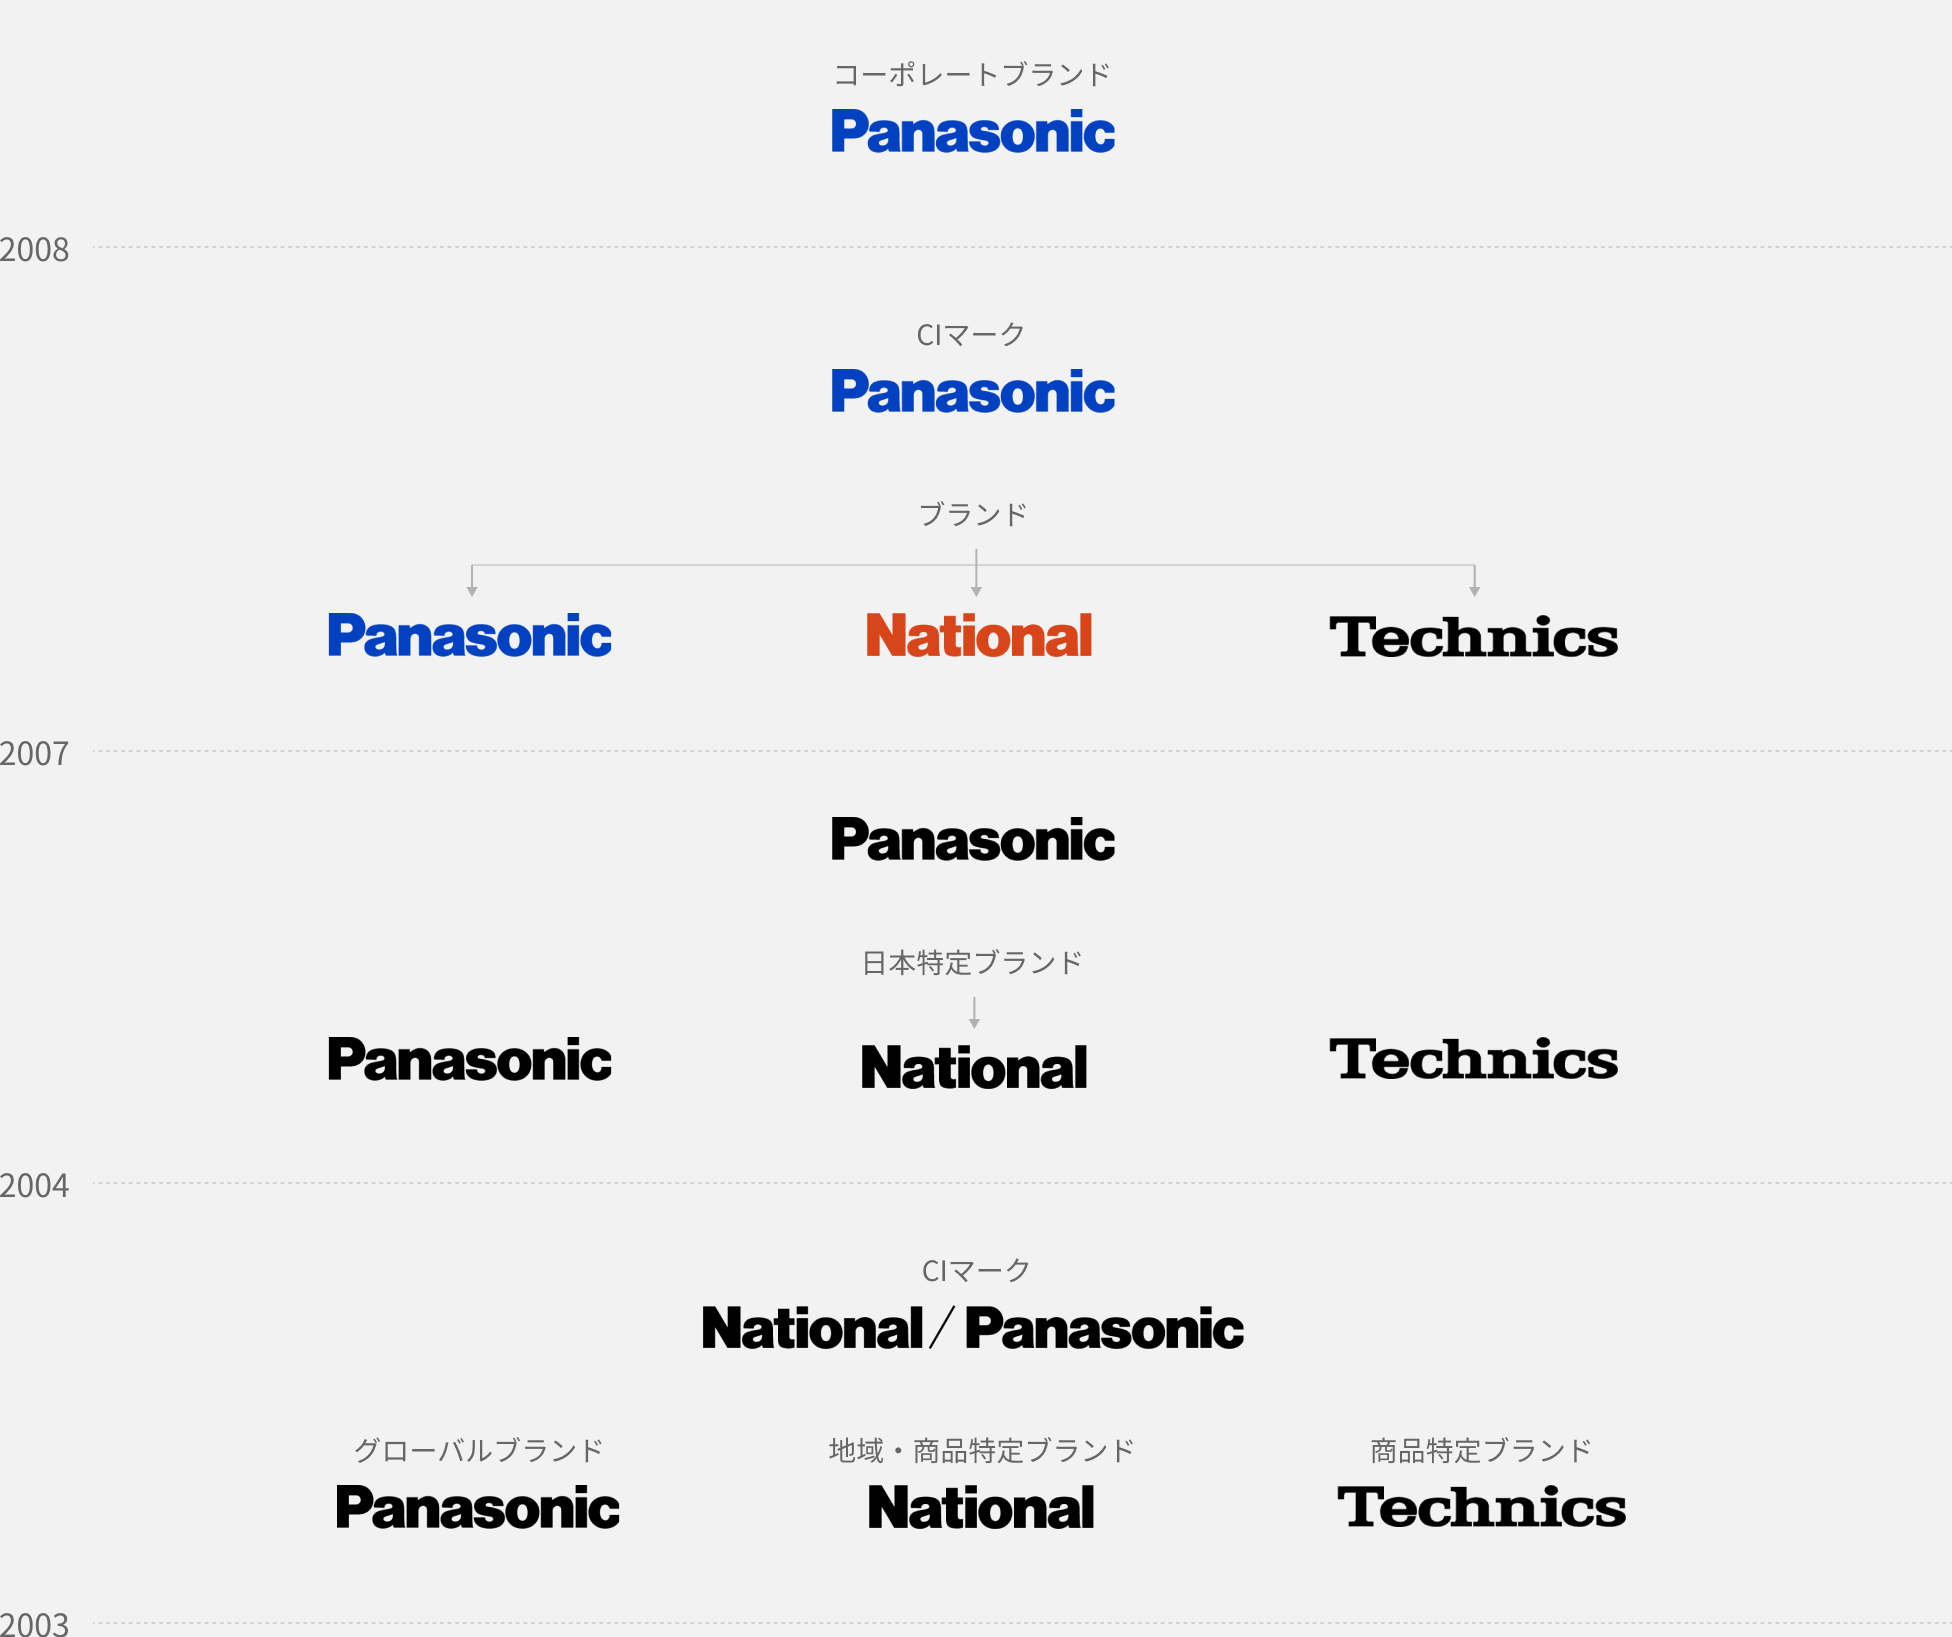 2008 年：コーポレートブランドが「Panasonic」に。2007 年：CI マークは「Panasonic」、ブランドは「Panasonic」、「National」、「Technics」の3 つに。2004 年：「Panasonic」、「Panasonic」、日本特定ブランドの規定、基準色の改定「National」、「Technics」。2003 年：CI マークの改定「National/Panasonic」、グローバルブランドの規定「Panasonic」、地域・商品特定ブランドの規定「National」、商品特定ブランドの規定「Technics」。